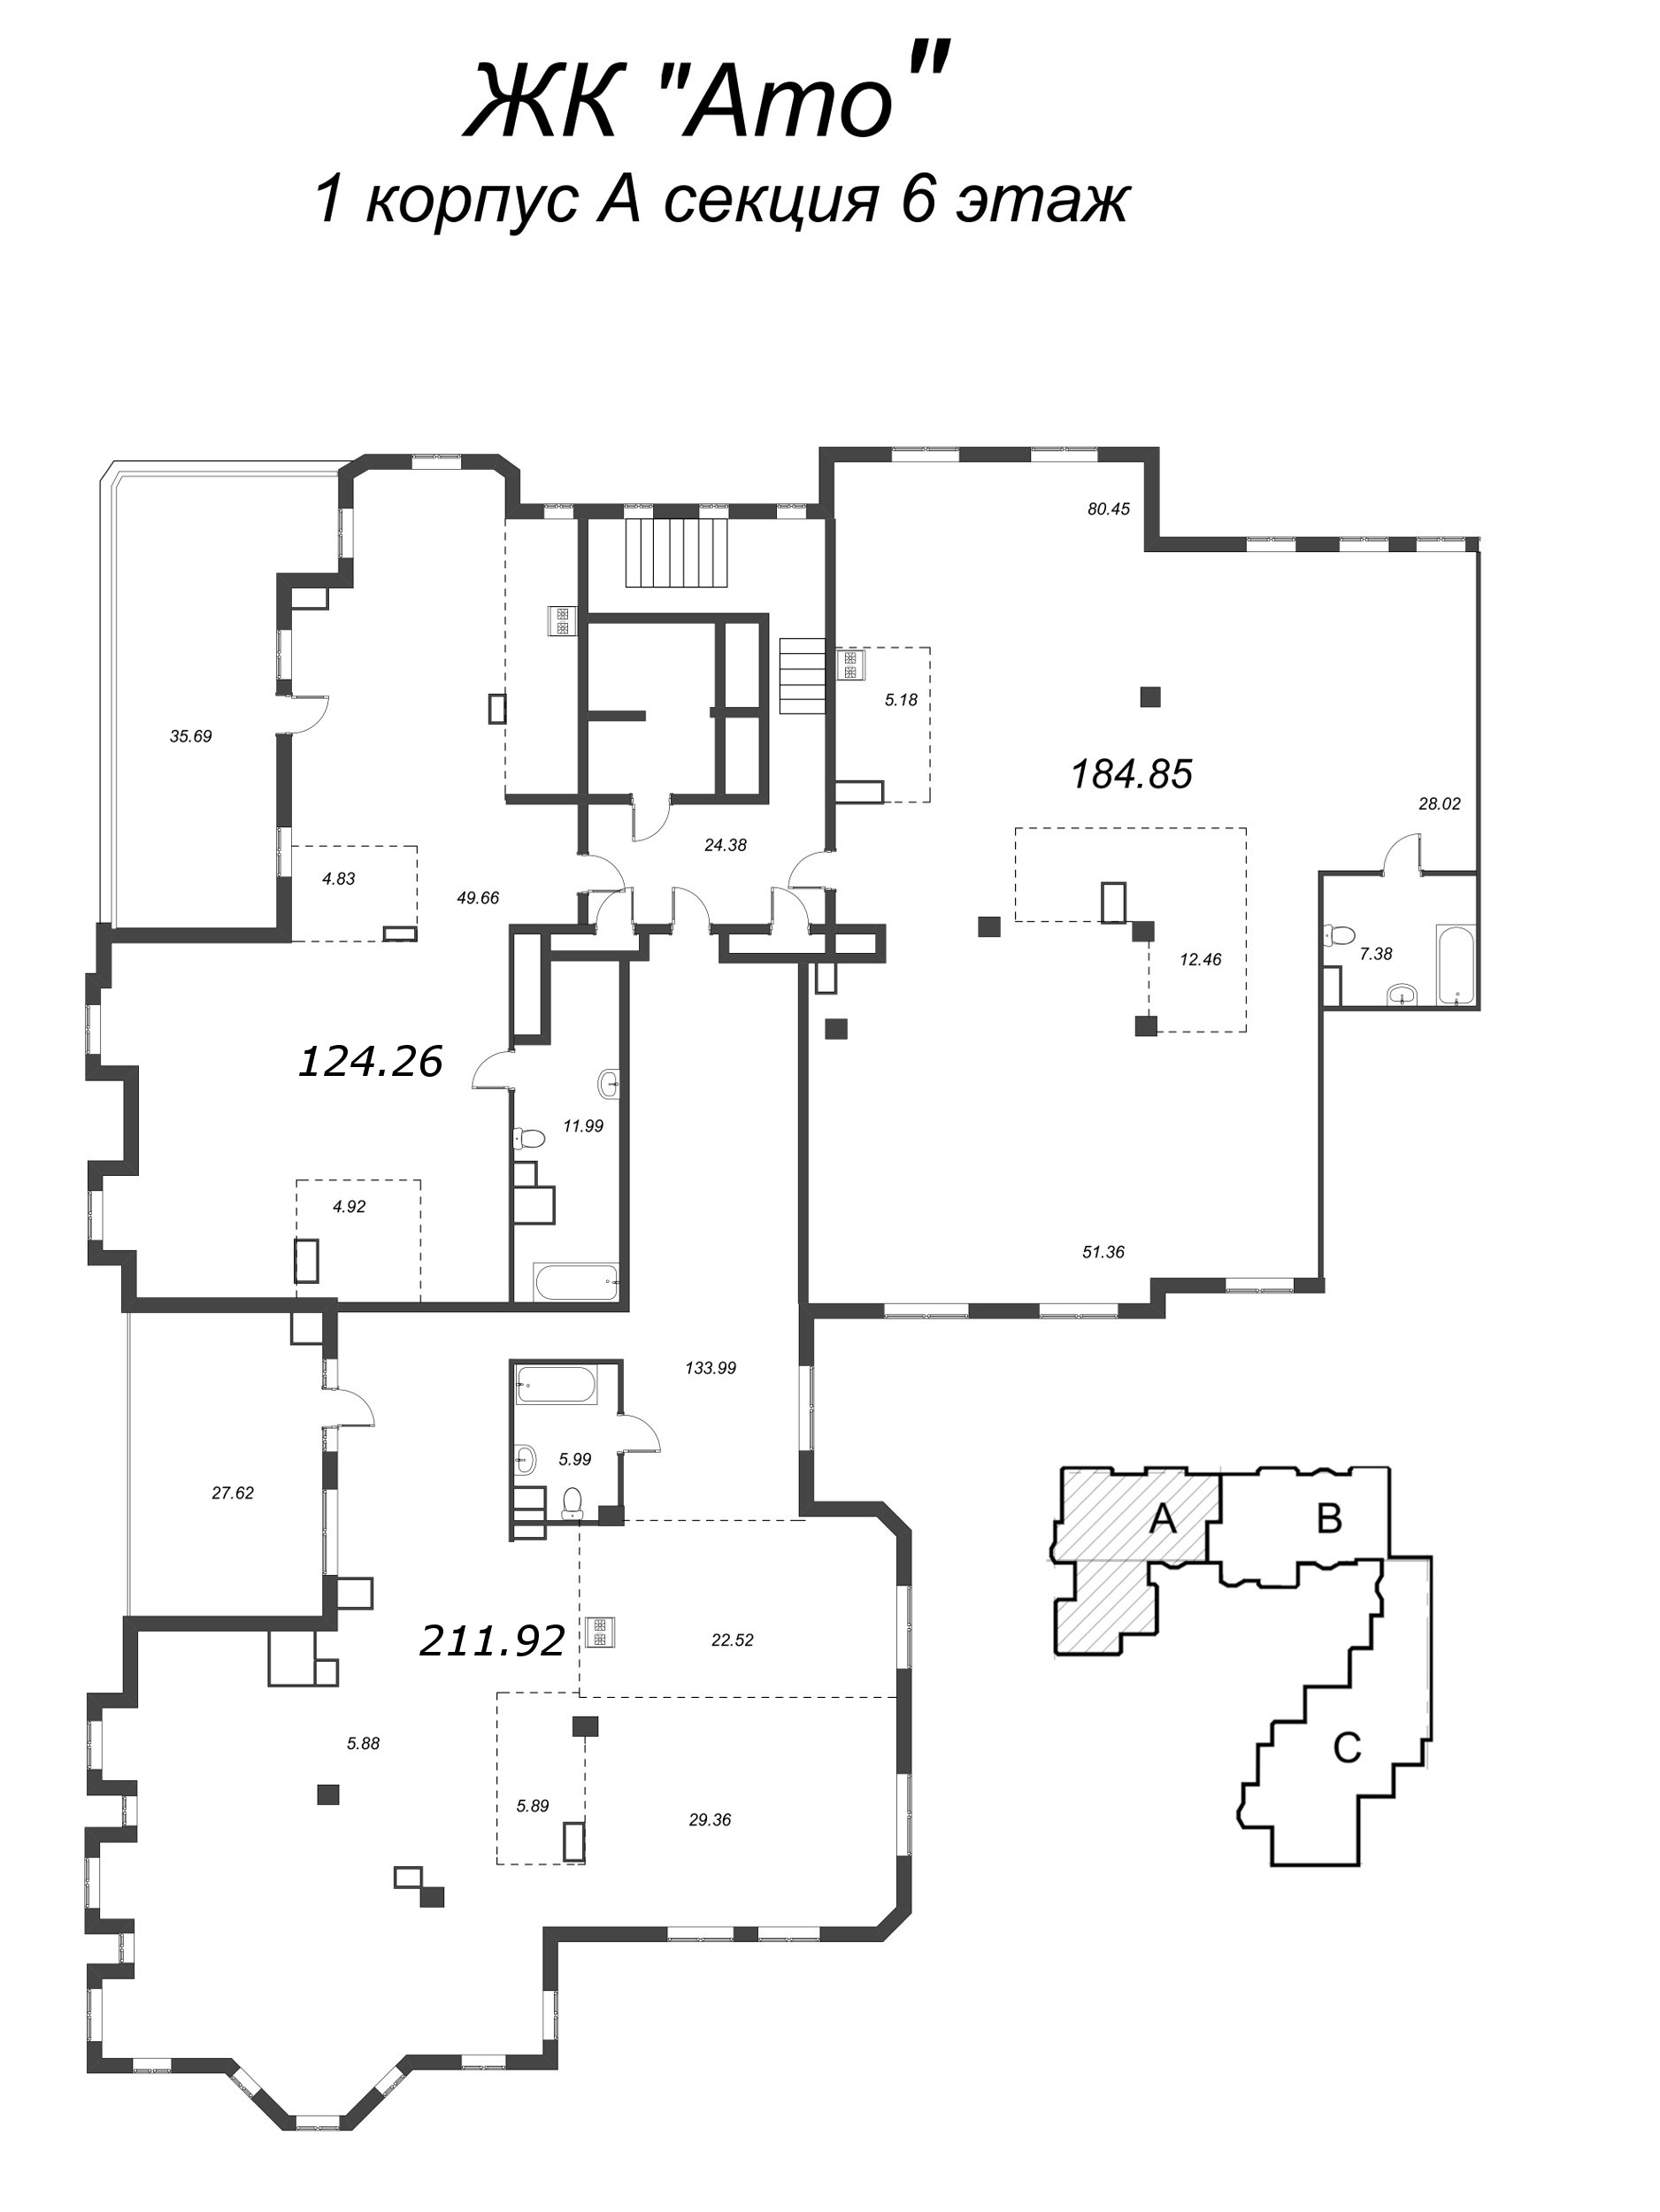 Квартира-студия, 185.12 м² в ЖК "Amo" - планировка этажа